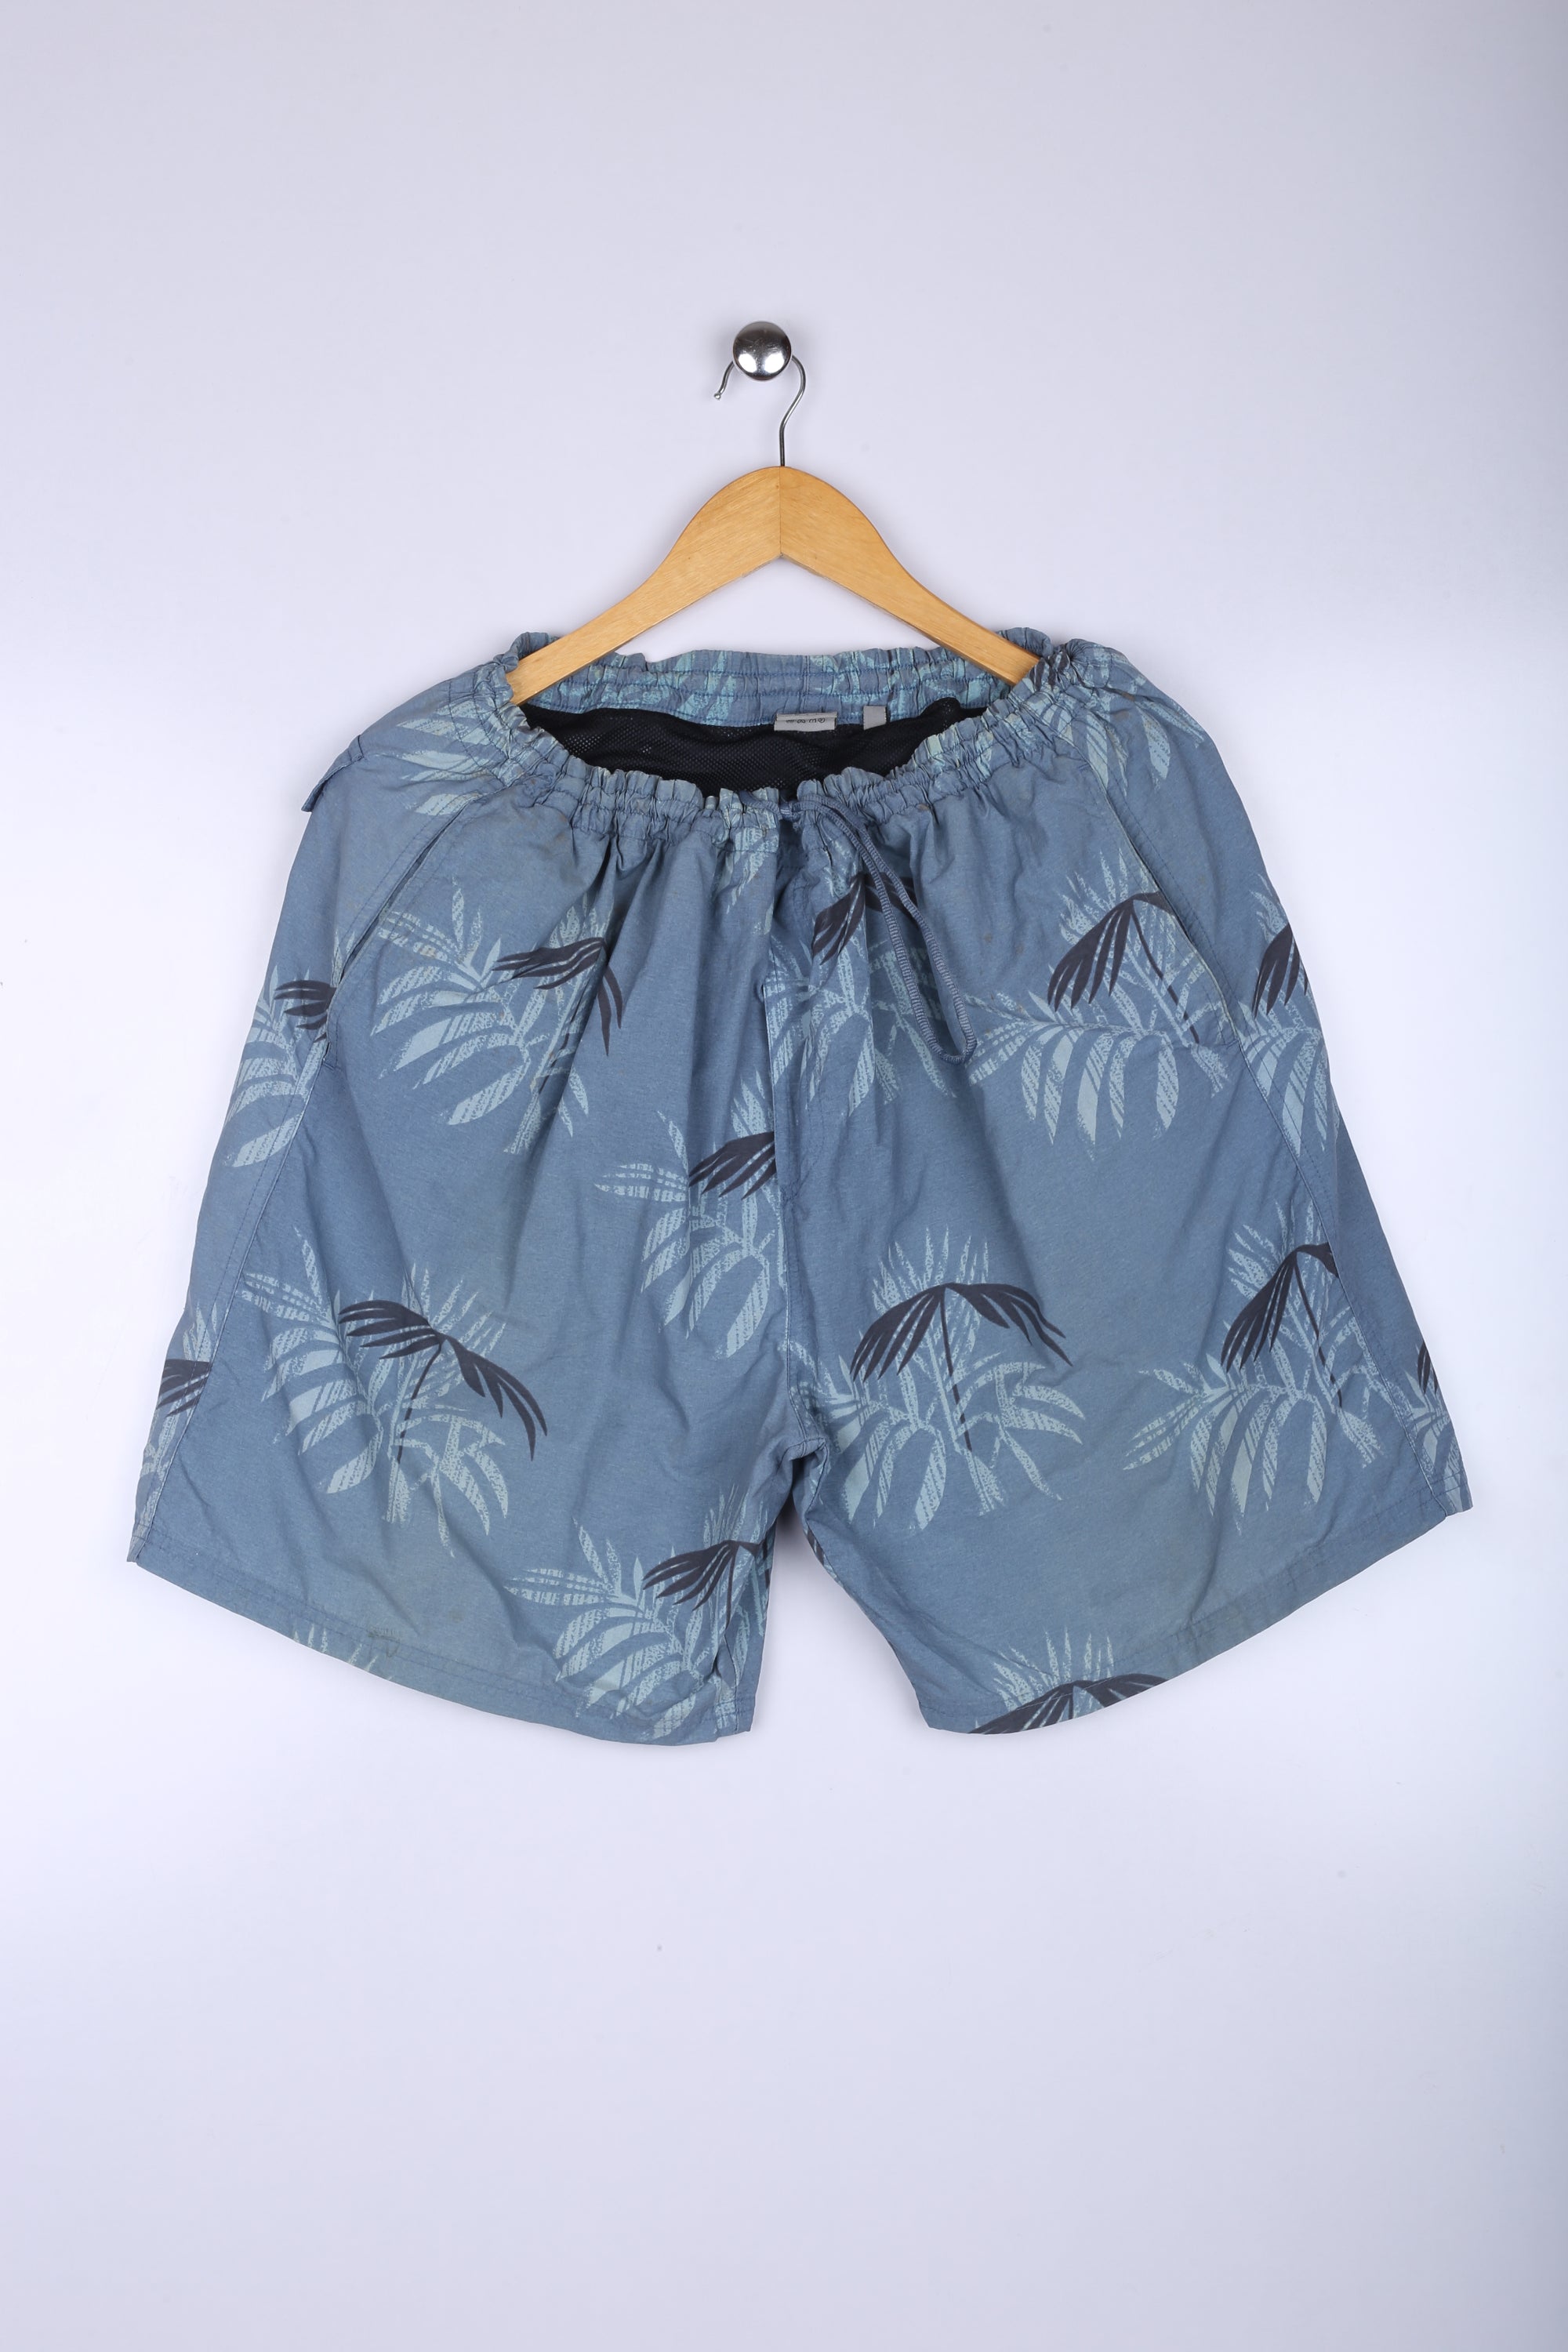 Vintage Hawaiin Shorts Blue